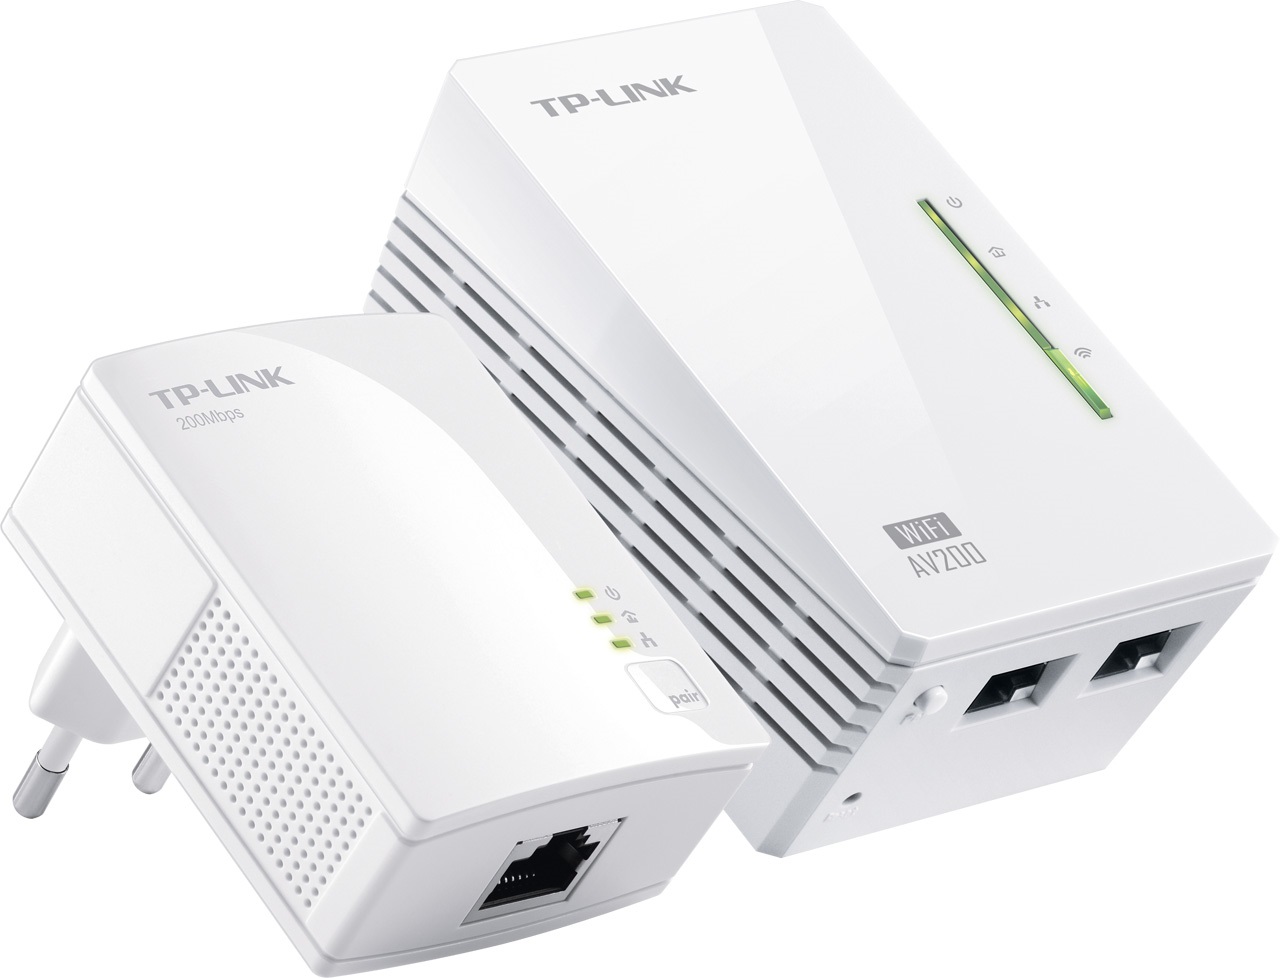 TP-Link: Wi-Fi tam gdzie prąd